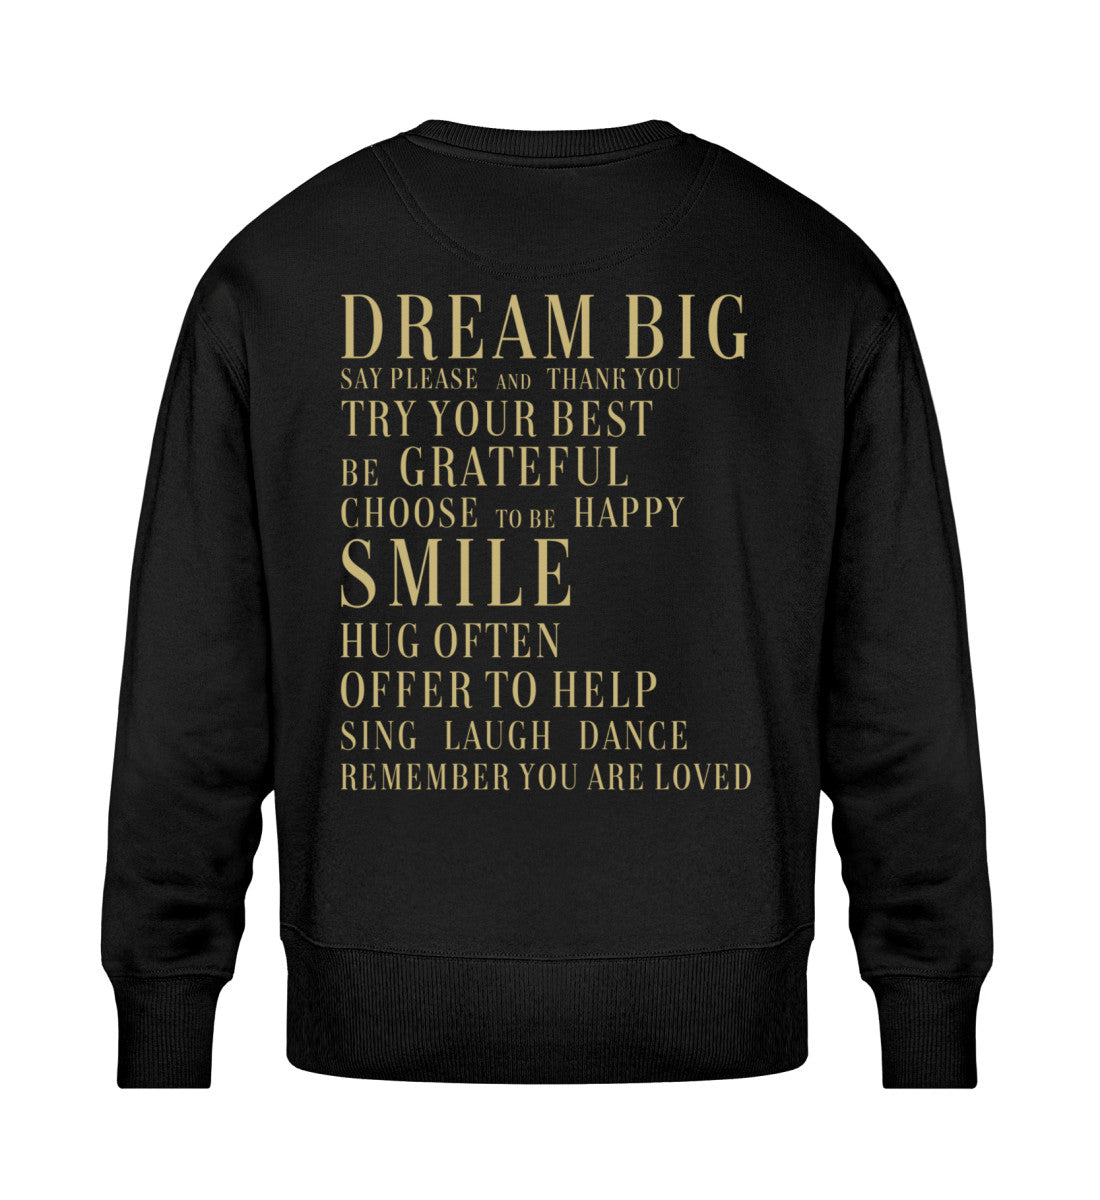 Schwarzes Sweatshirt Unisex für Frauen und Männer bedruckt mit dem Design der Roger Rockawoo Kollektion Dream Big